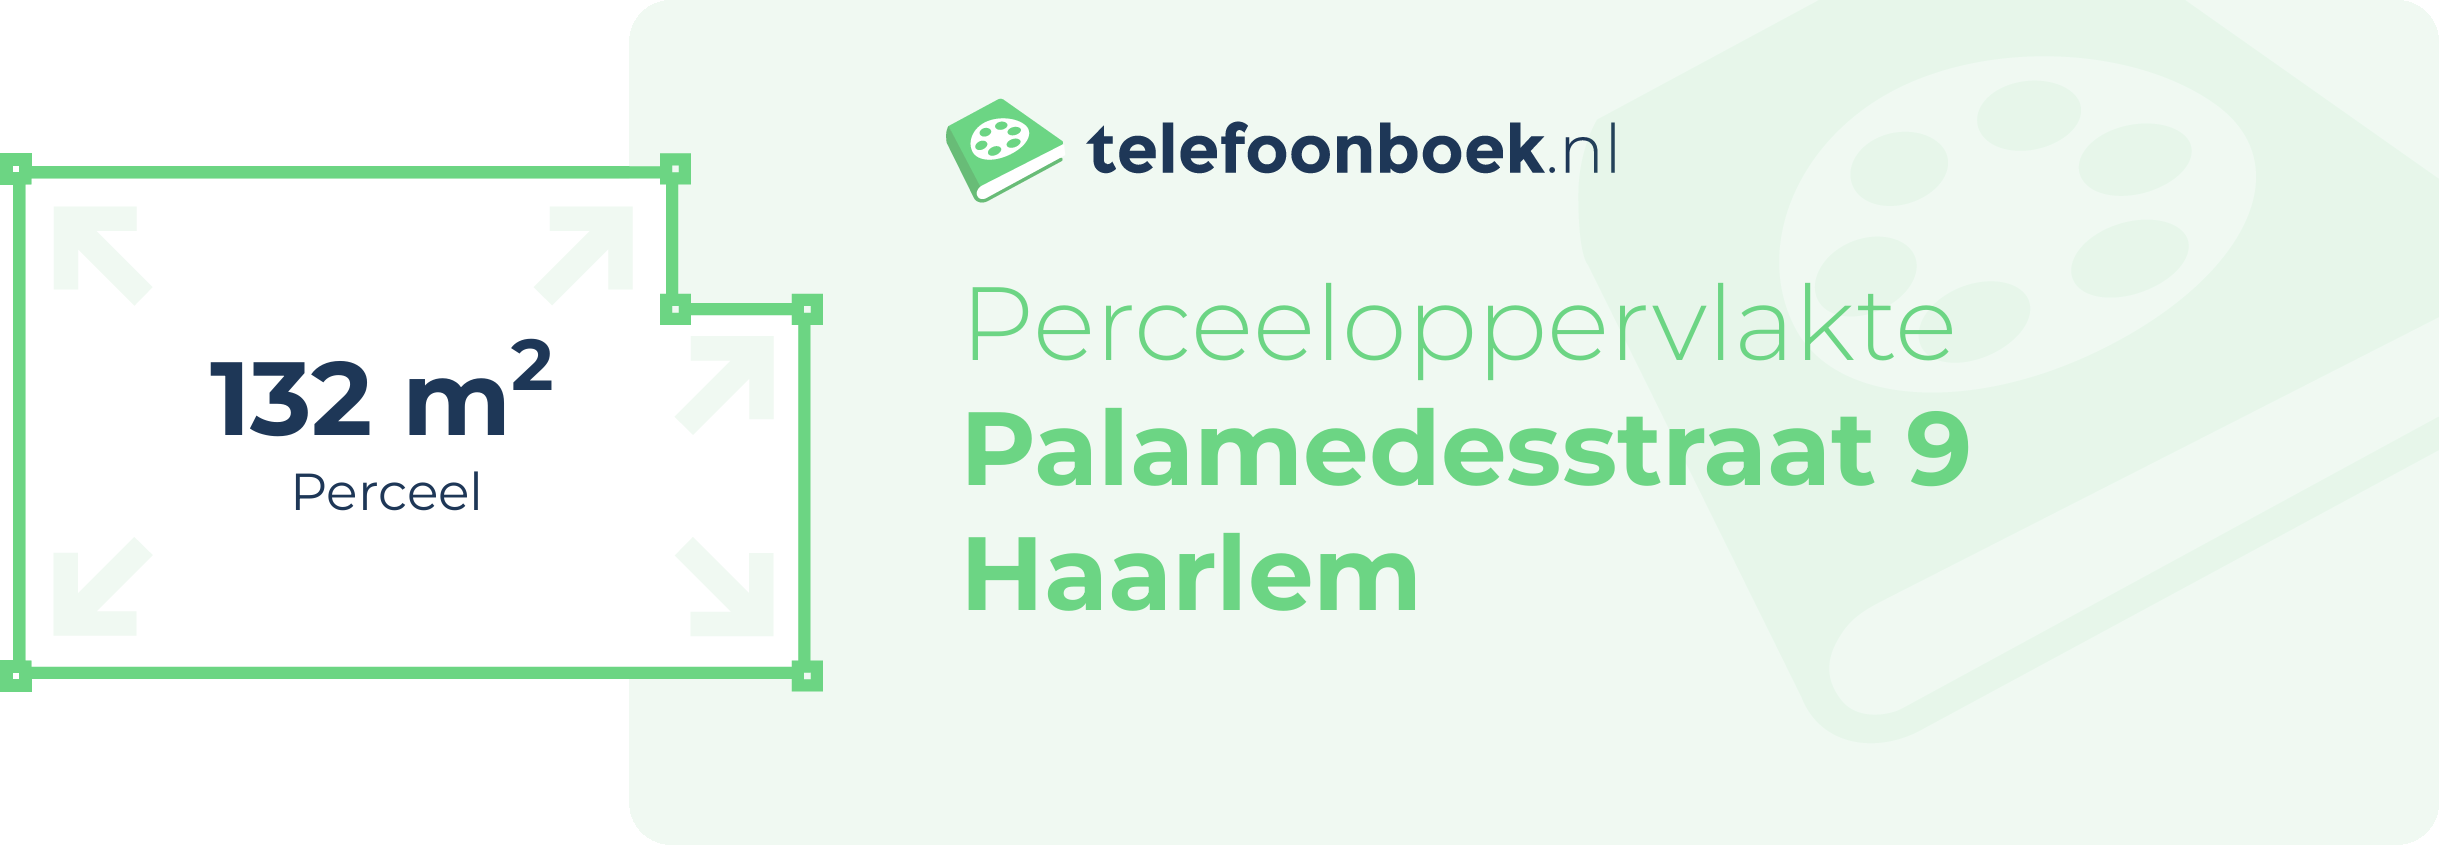 Perceeloppervlakte Palamedesstraat 9 Haarlem